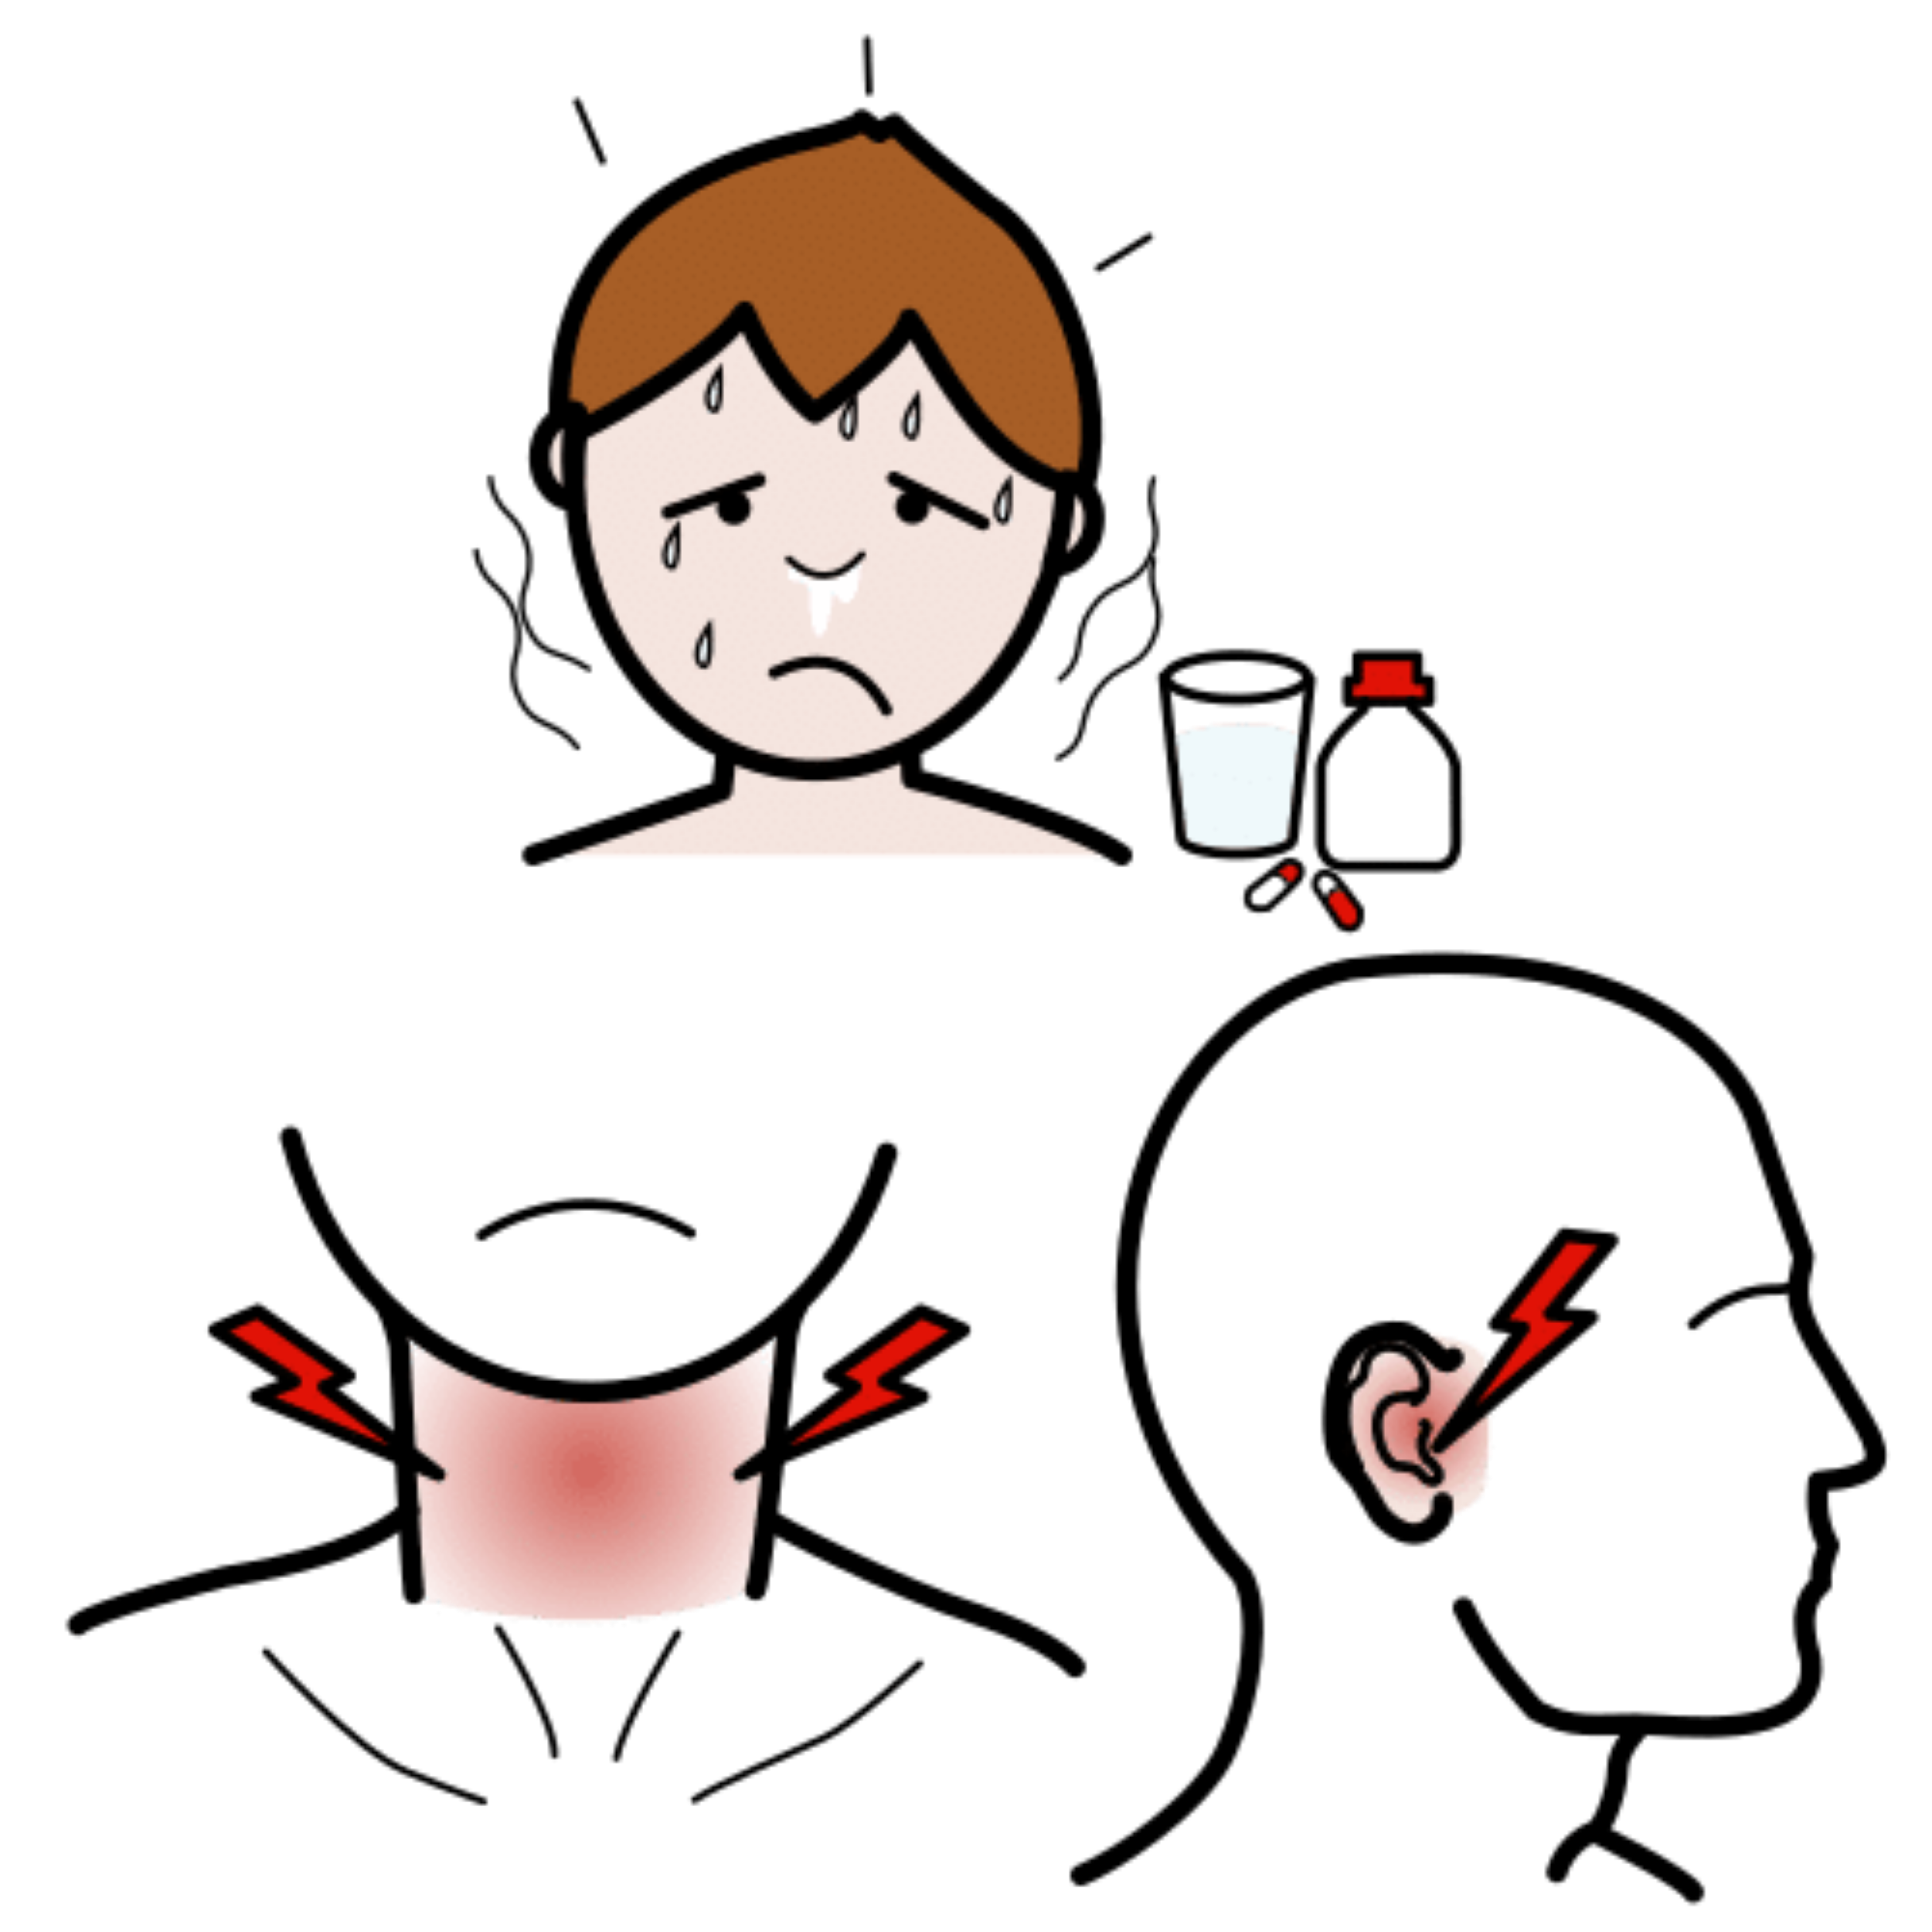 La imagen muestra el dibujo de un niño sudando, junto un vaso de agua con algunas pastillas. También muestra una garganta junto con varios símbolos de dolor.